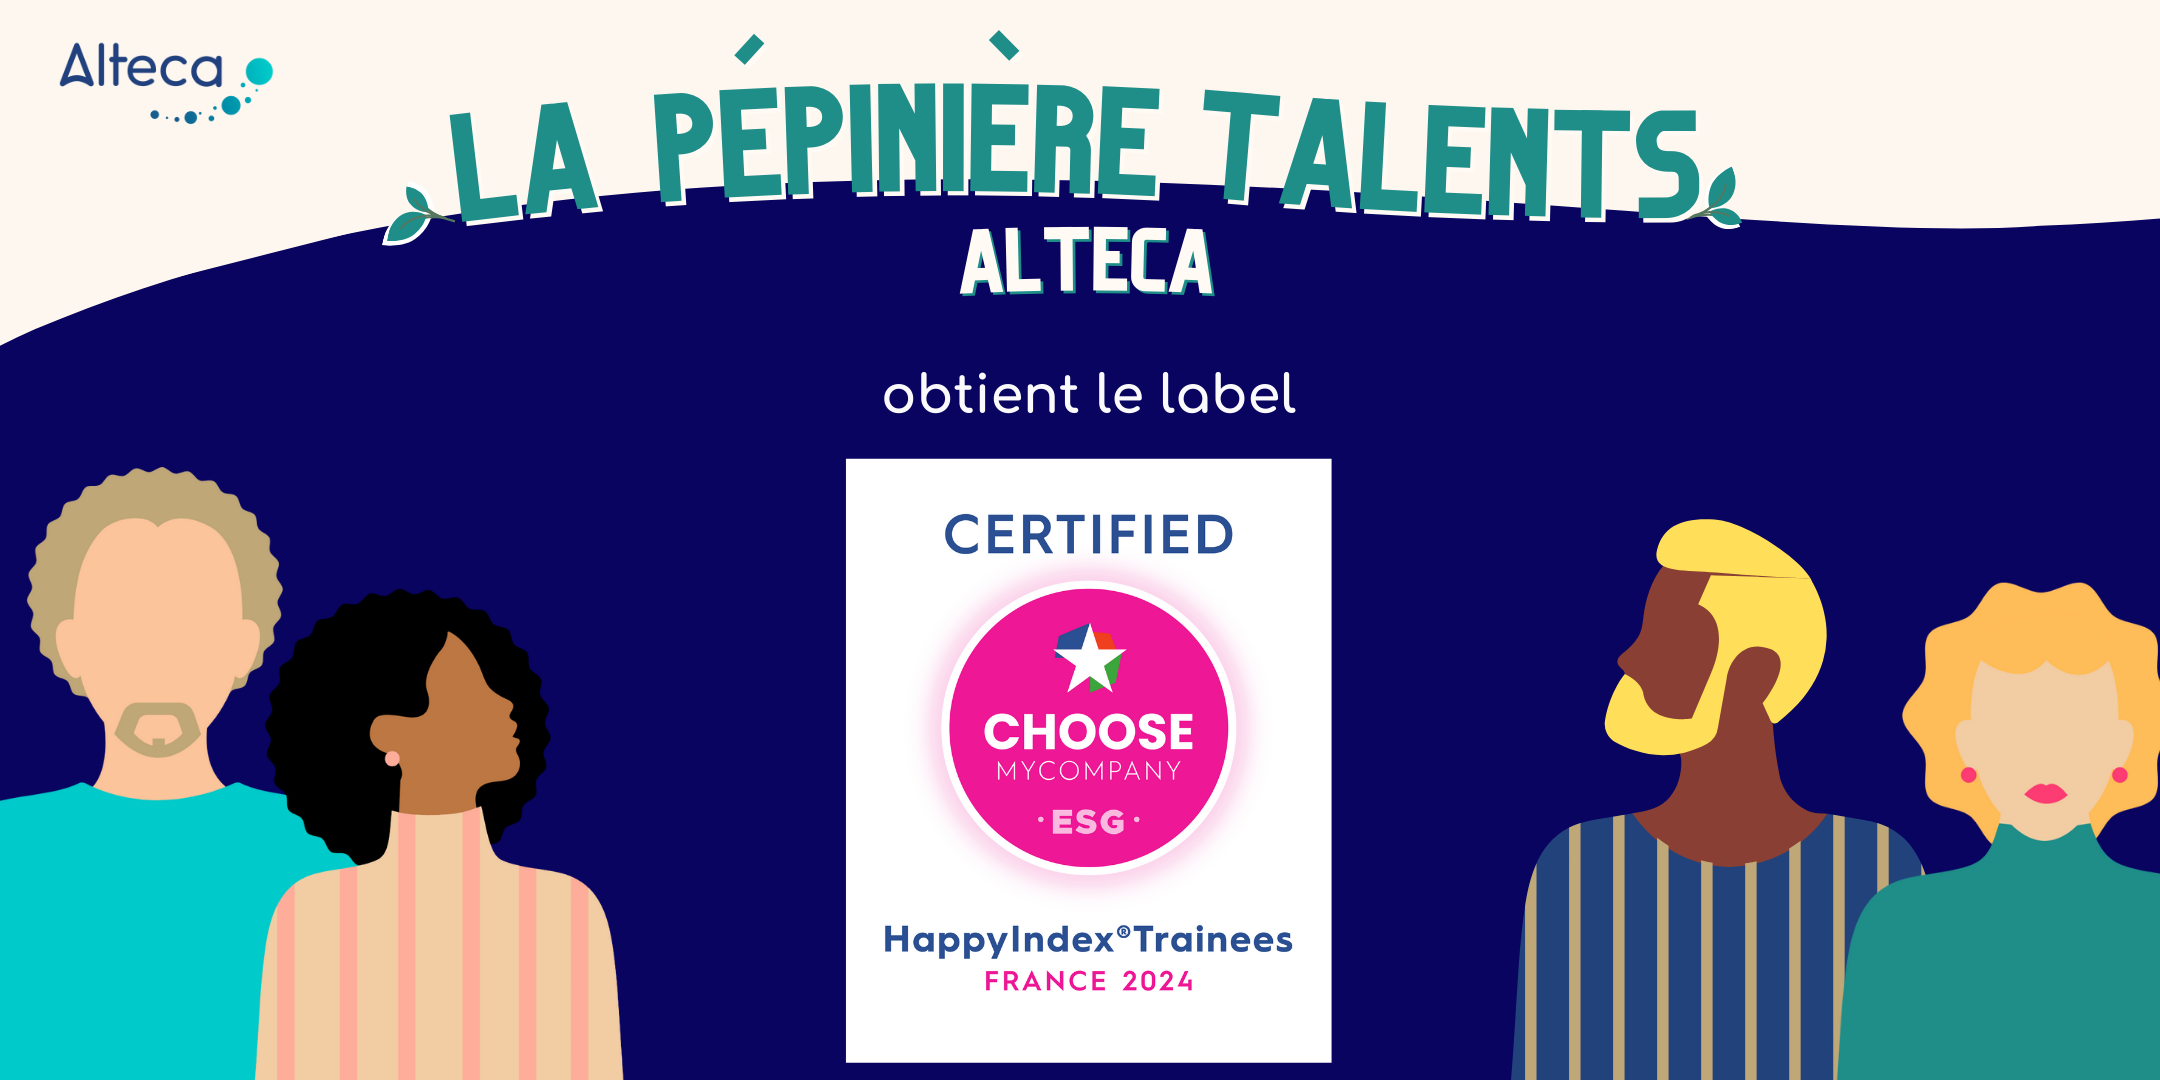 La Pépinière Talents Alteca obtient le label Happy Trainees 2024